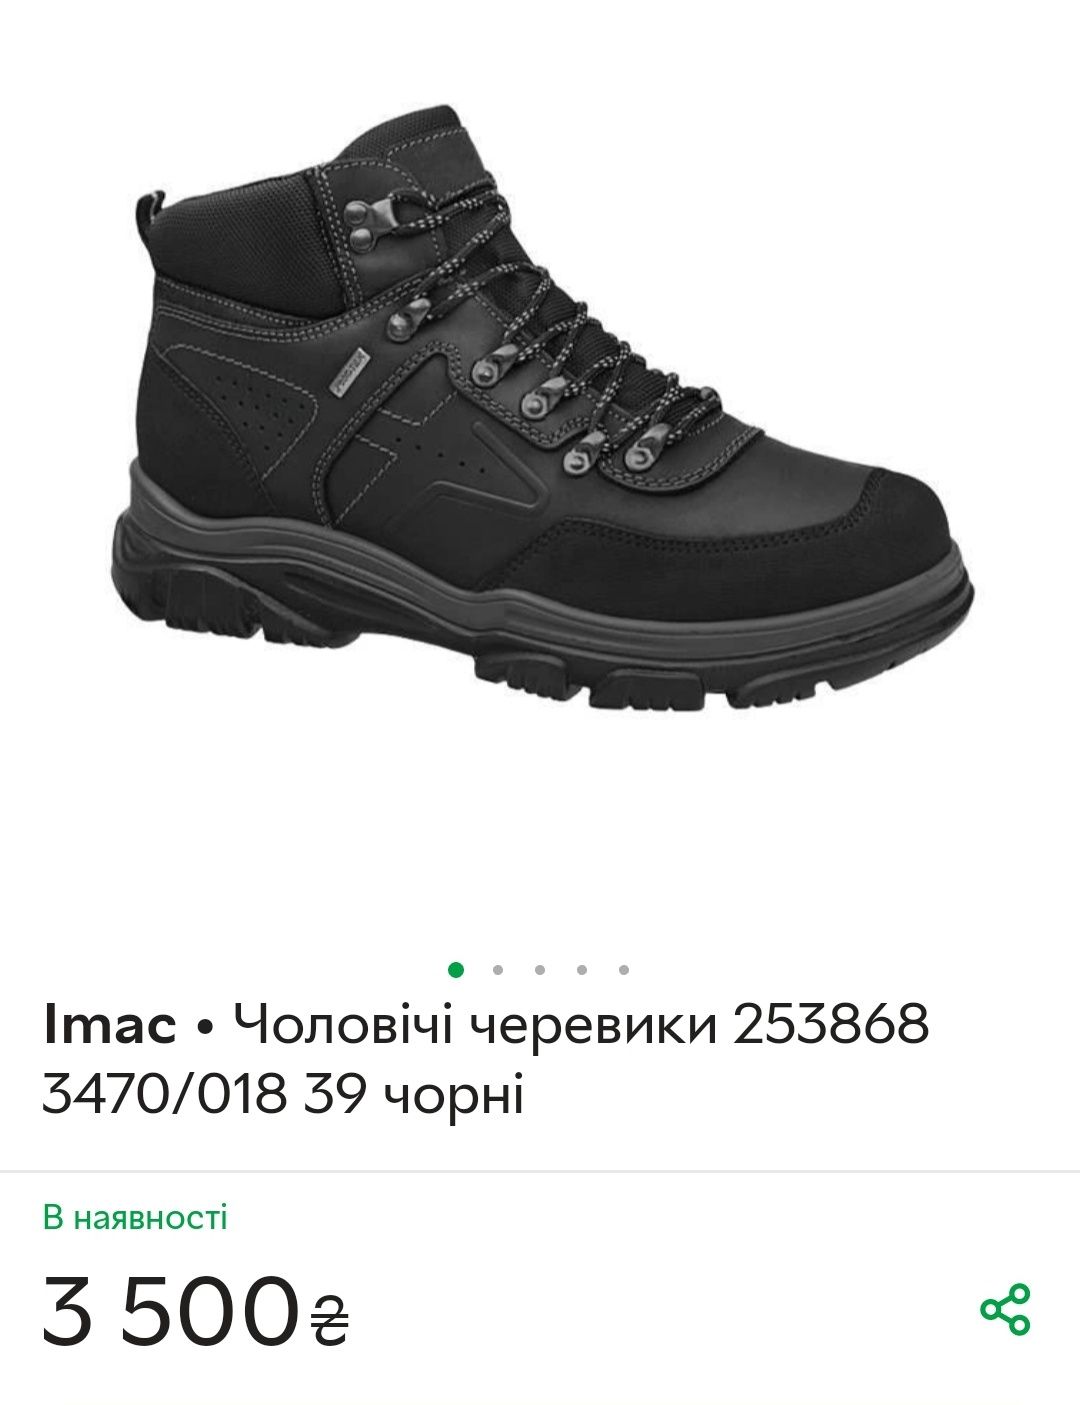 Продам мужские ботинки итальянского производителя Imac YH180